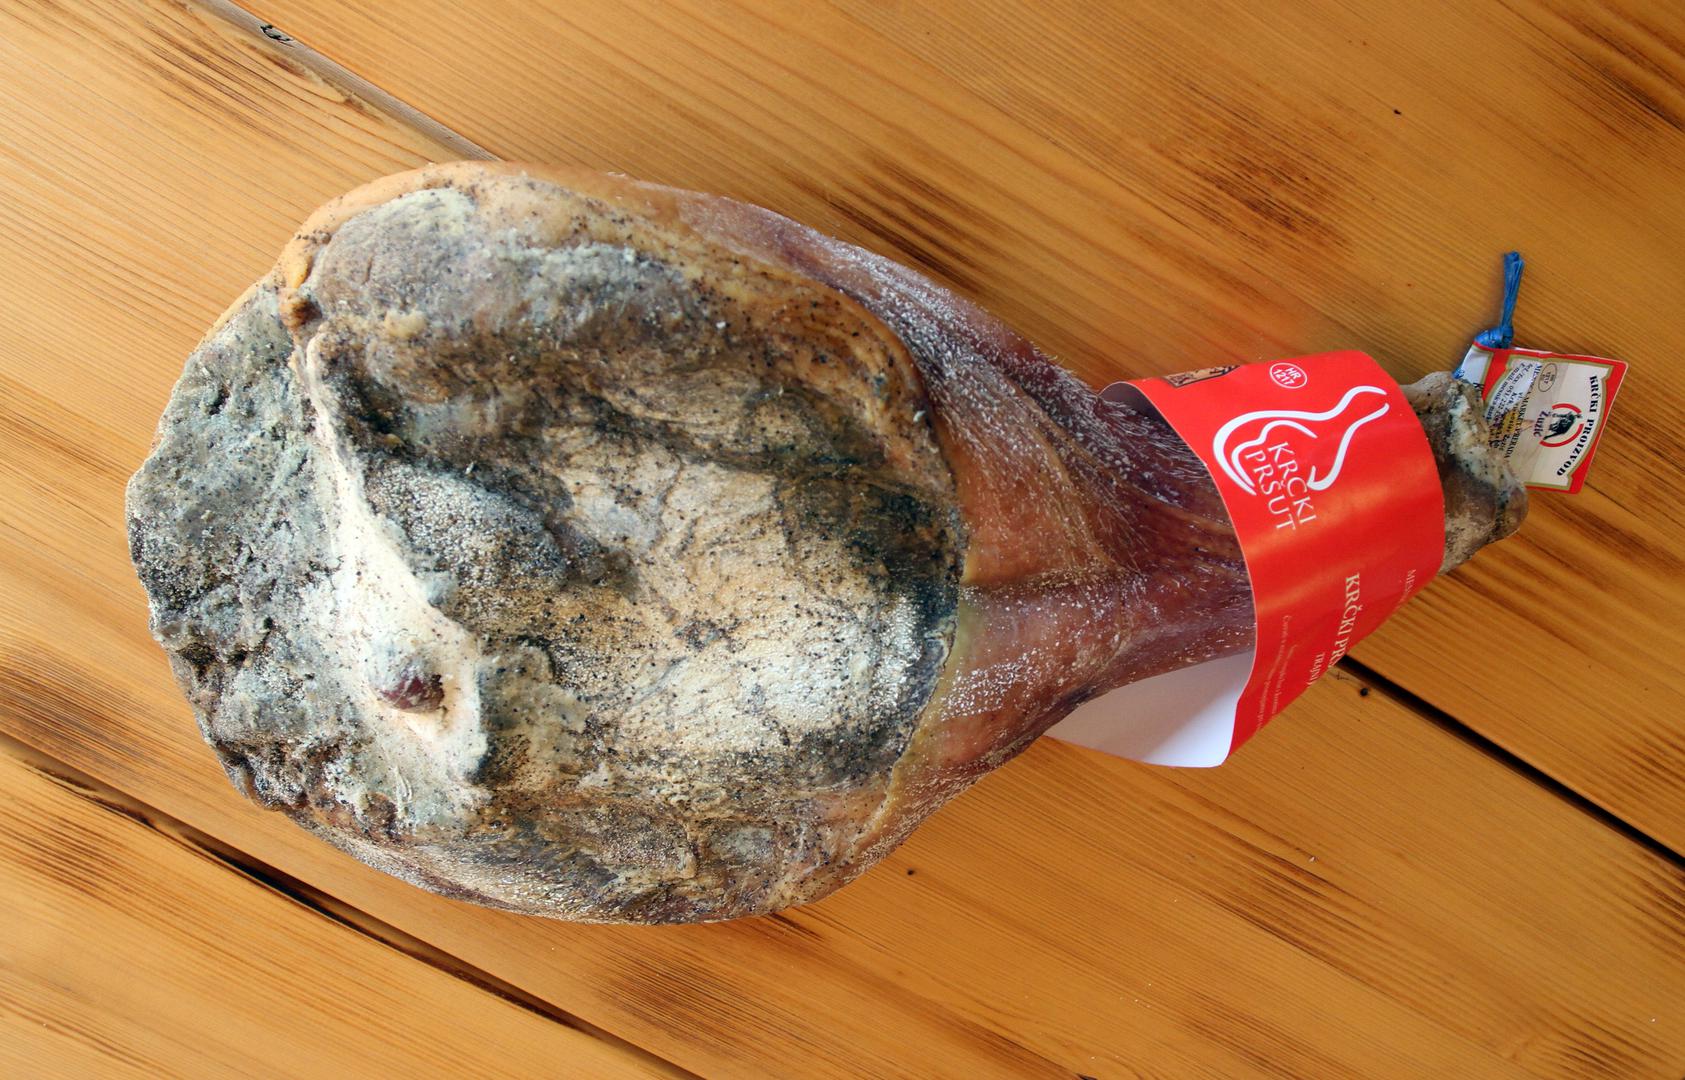 2. Krčki pršut - trajni suhomesnati proizvod od svinjskog buta bez zdjeličnih kosti. Izdvaja ga postupak proizvodnje karakterističan za otok Krk s kojeg potječe, a odnosi se na soljenje morskom soli te sušenje mesa na zraku.